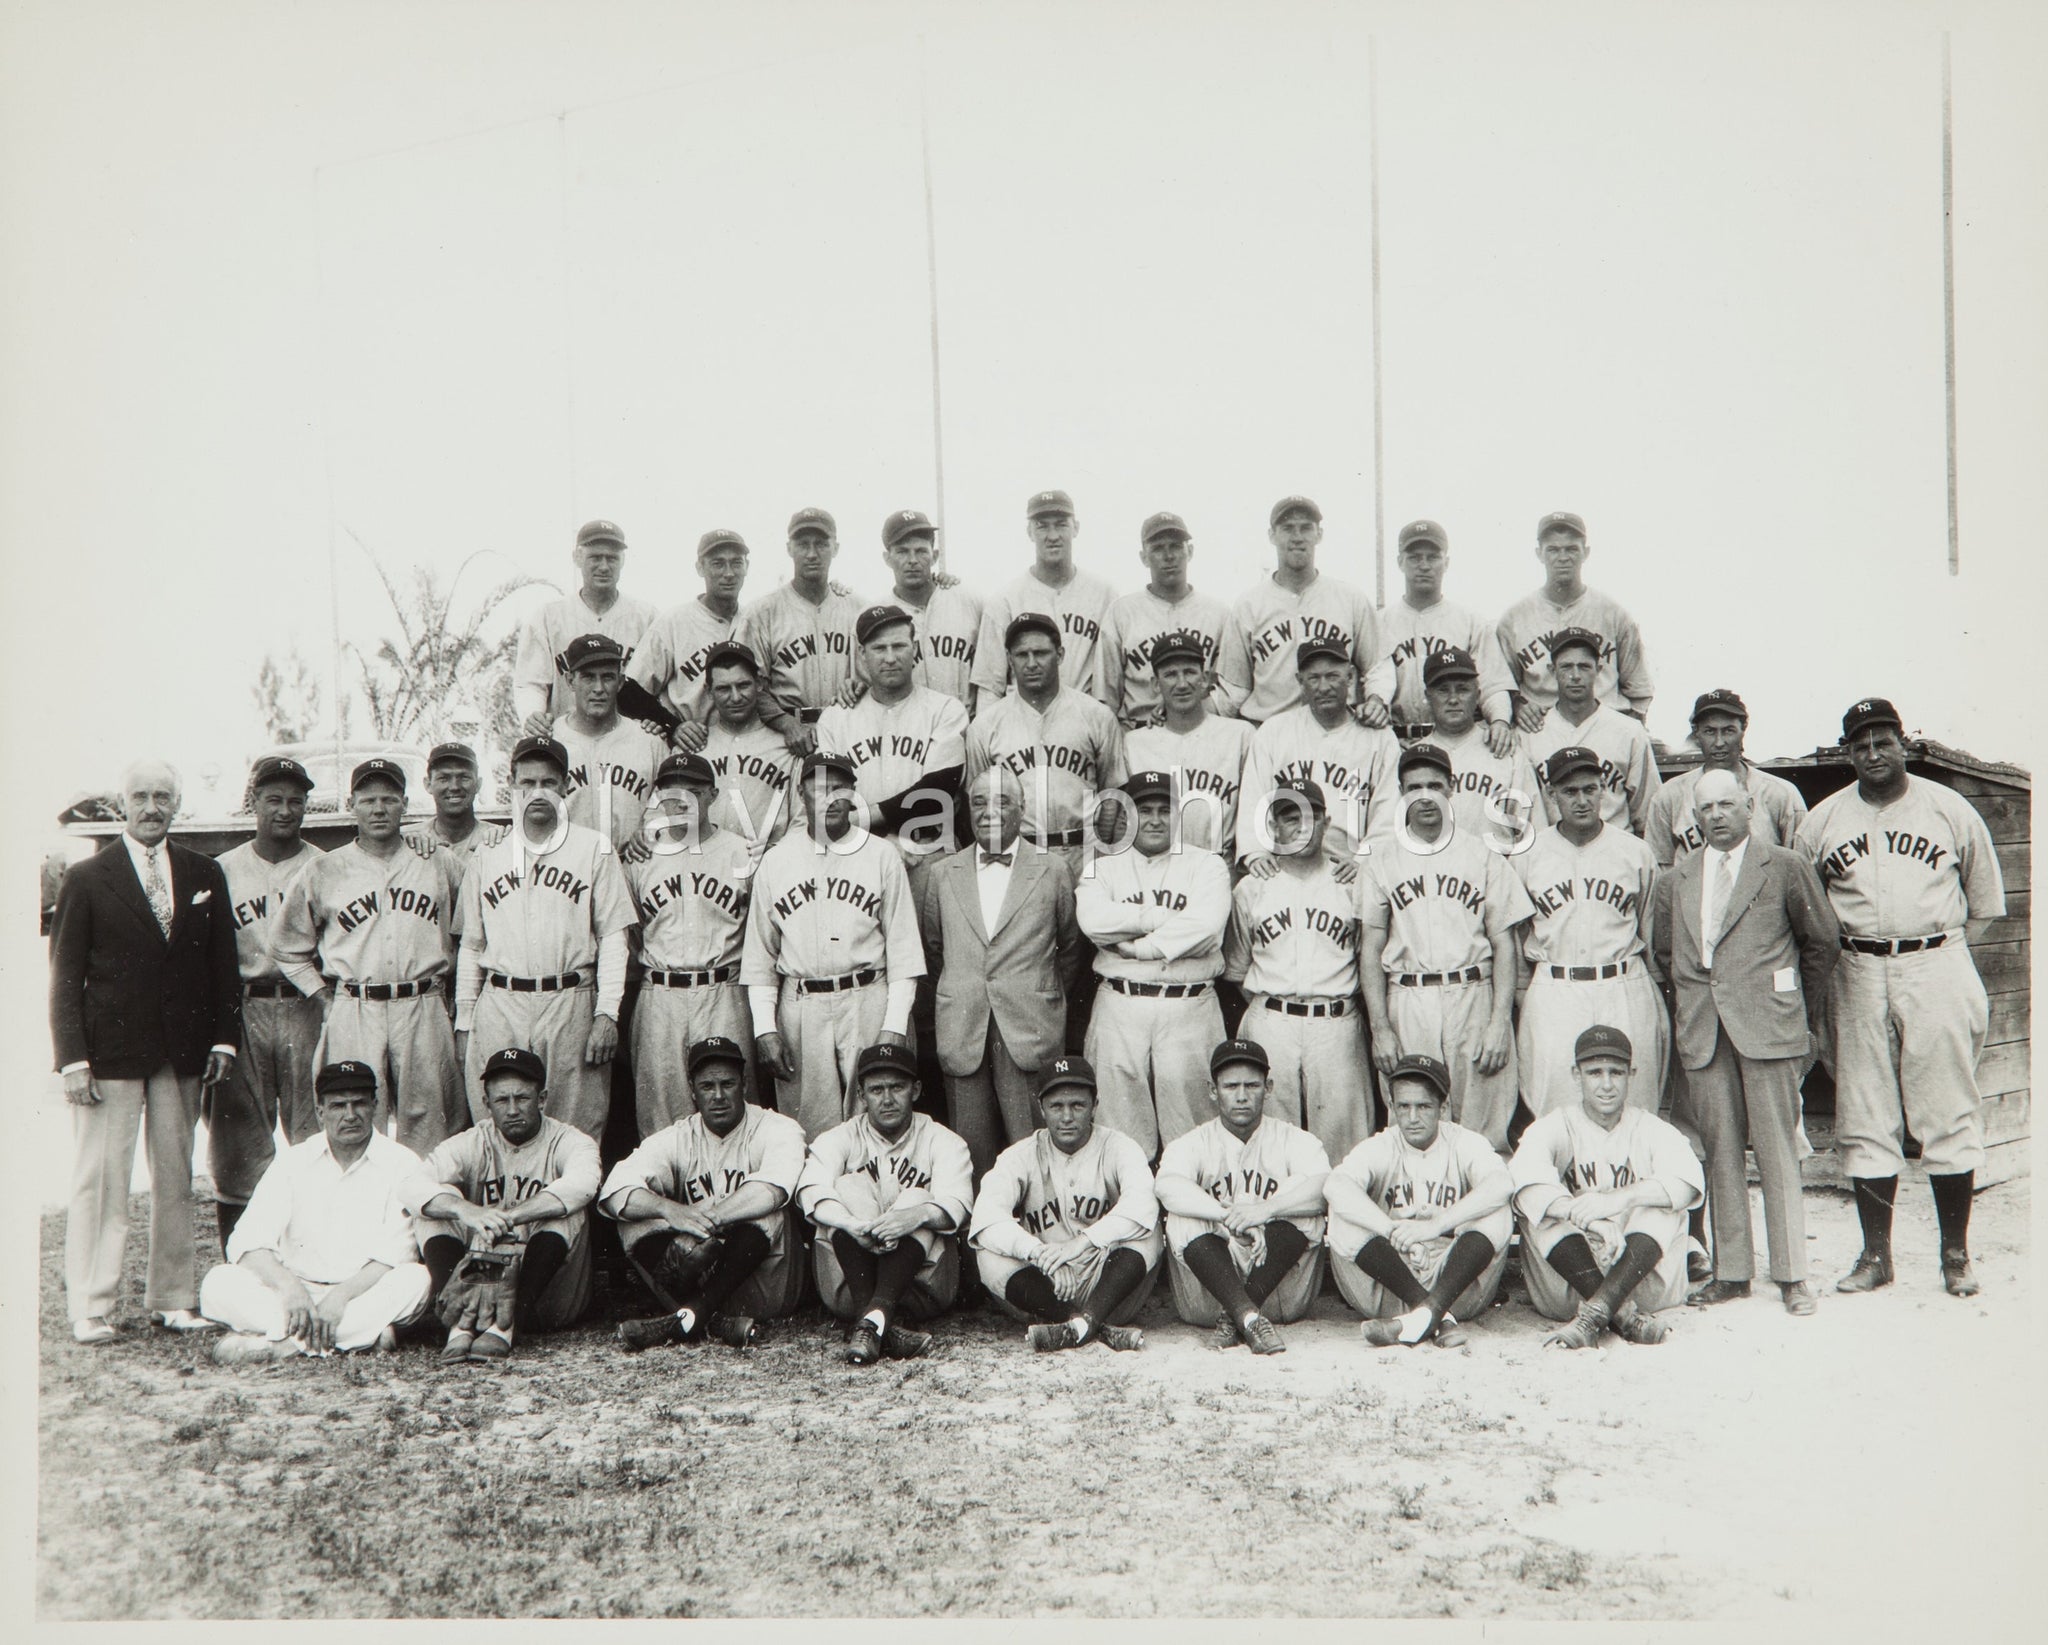 1935 NY Yankees Team